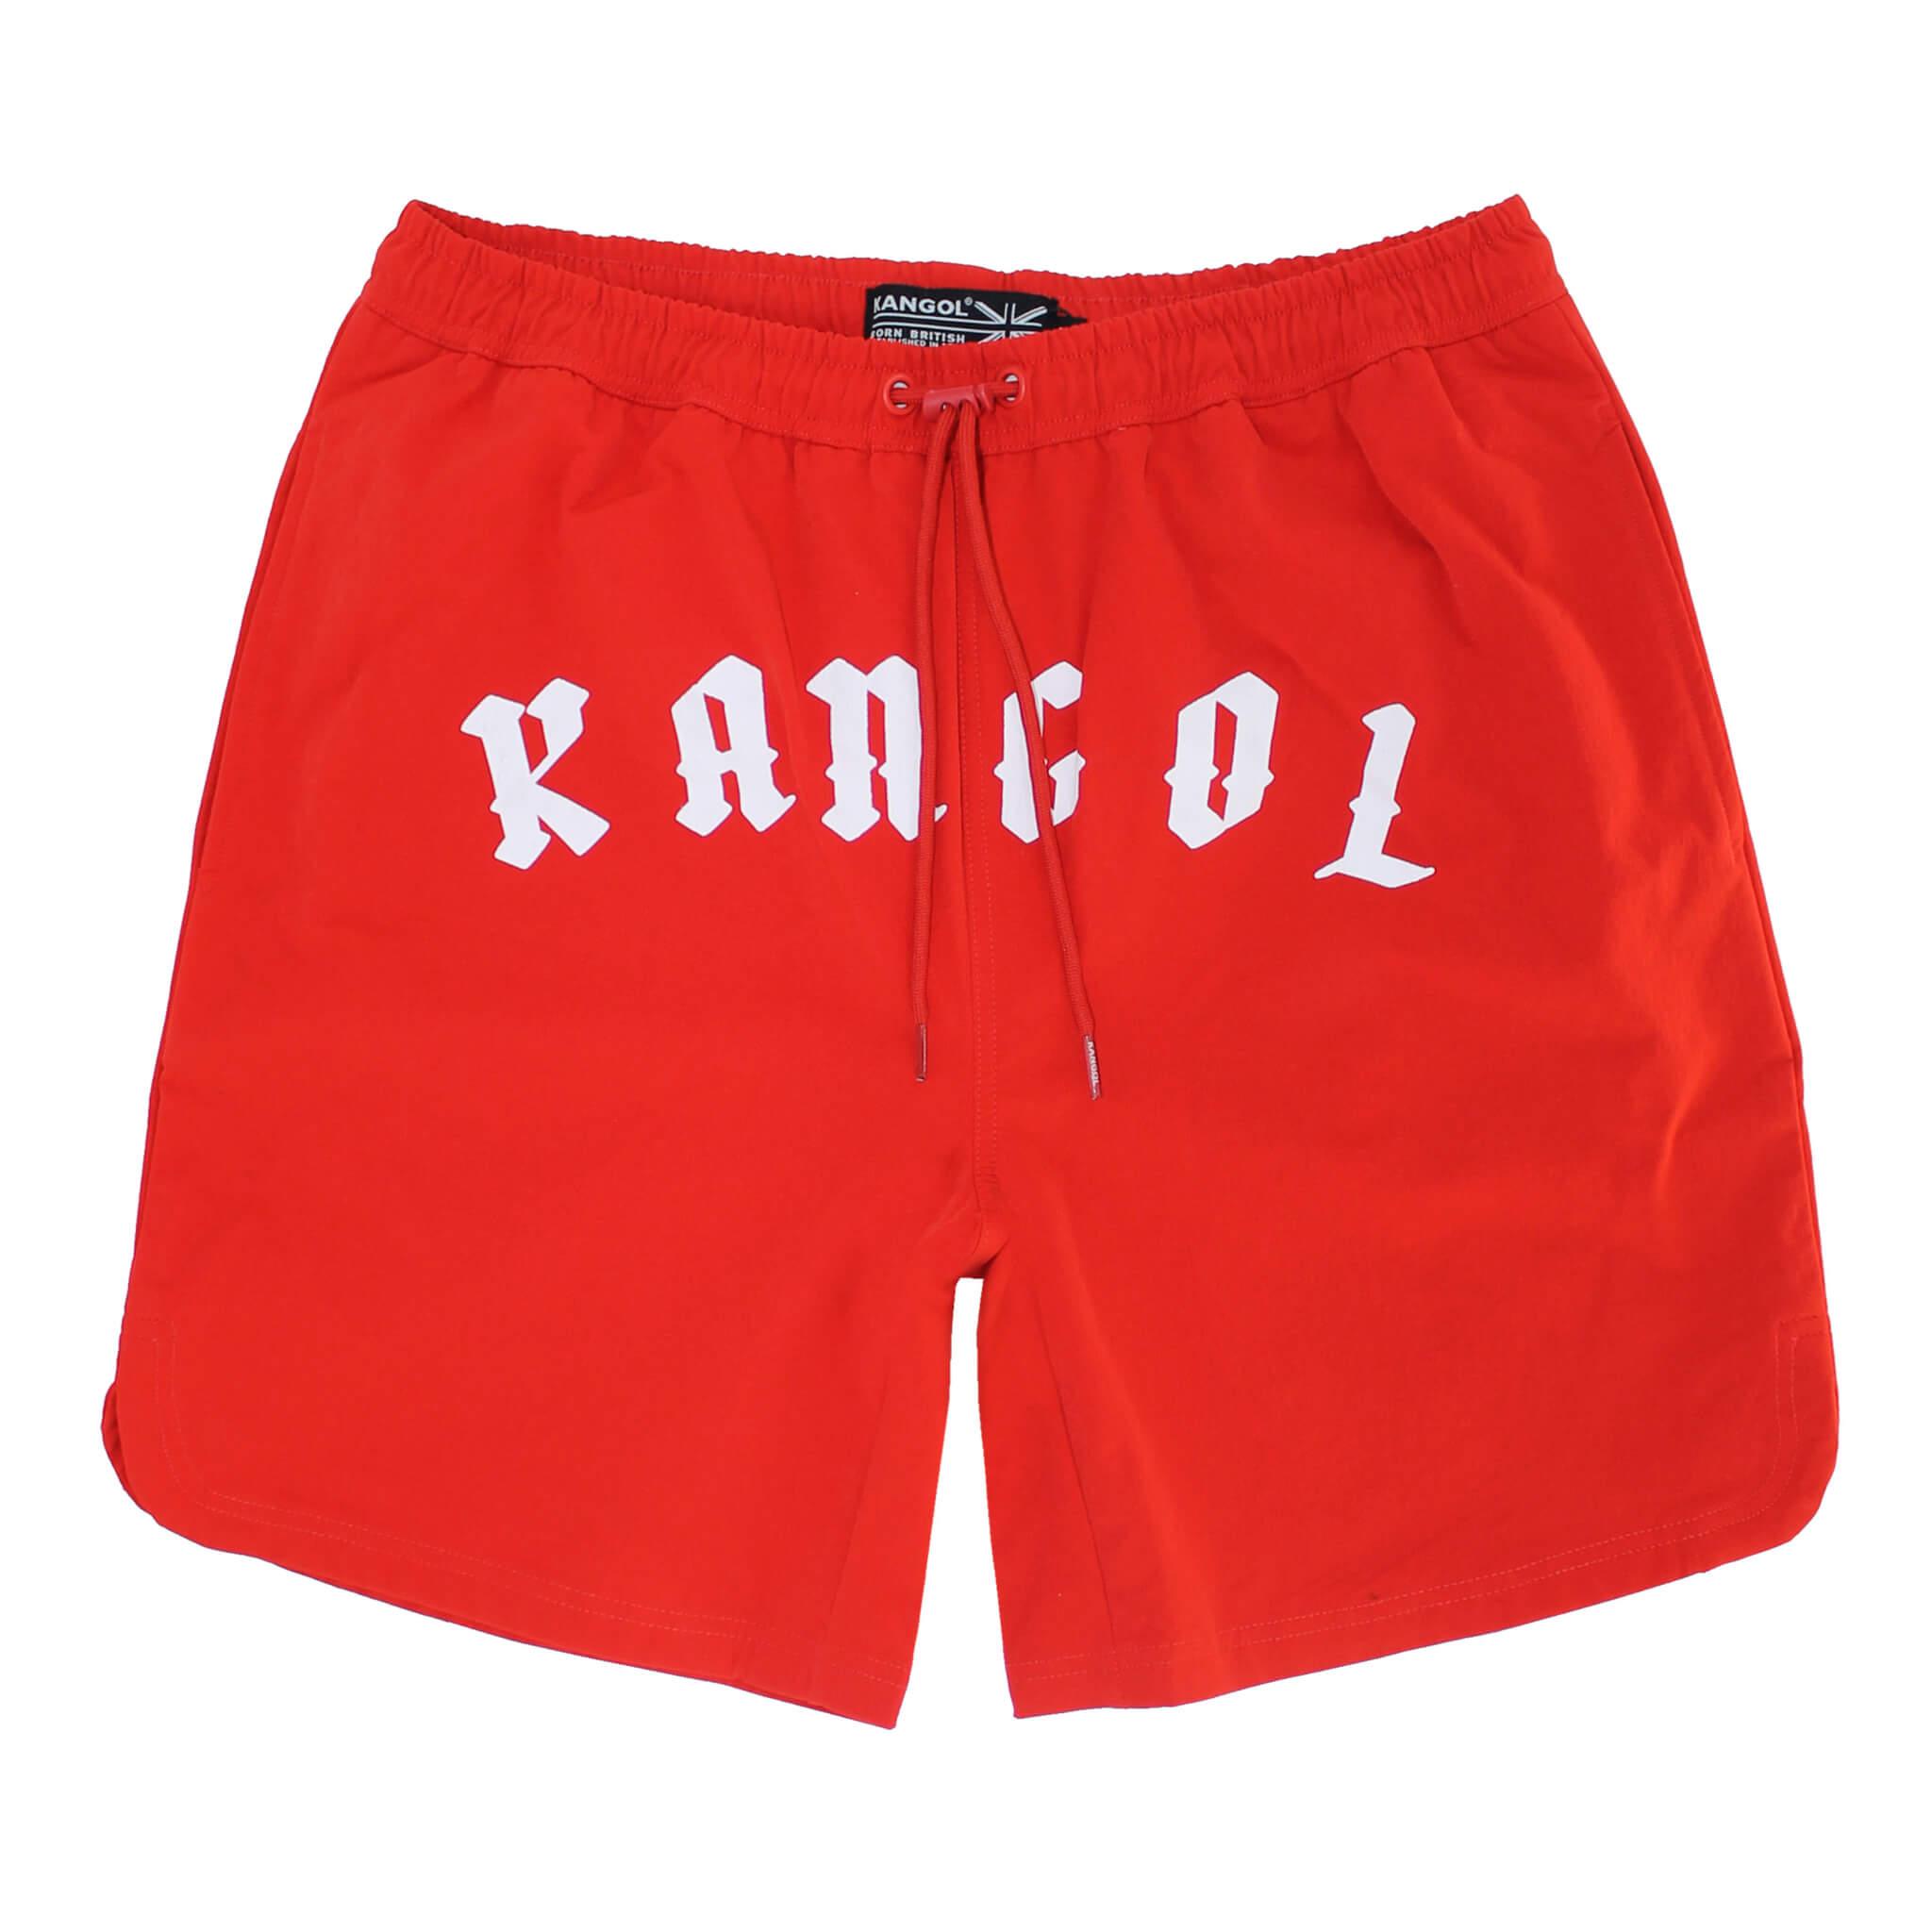 Kangol Gothic Swim Short - Fashion Hub Club